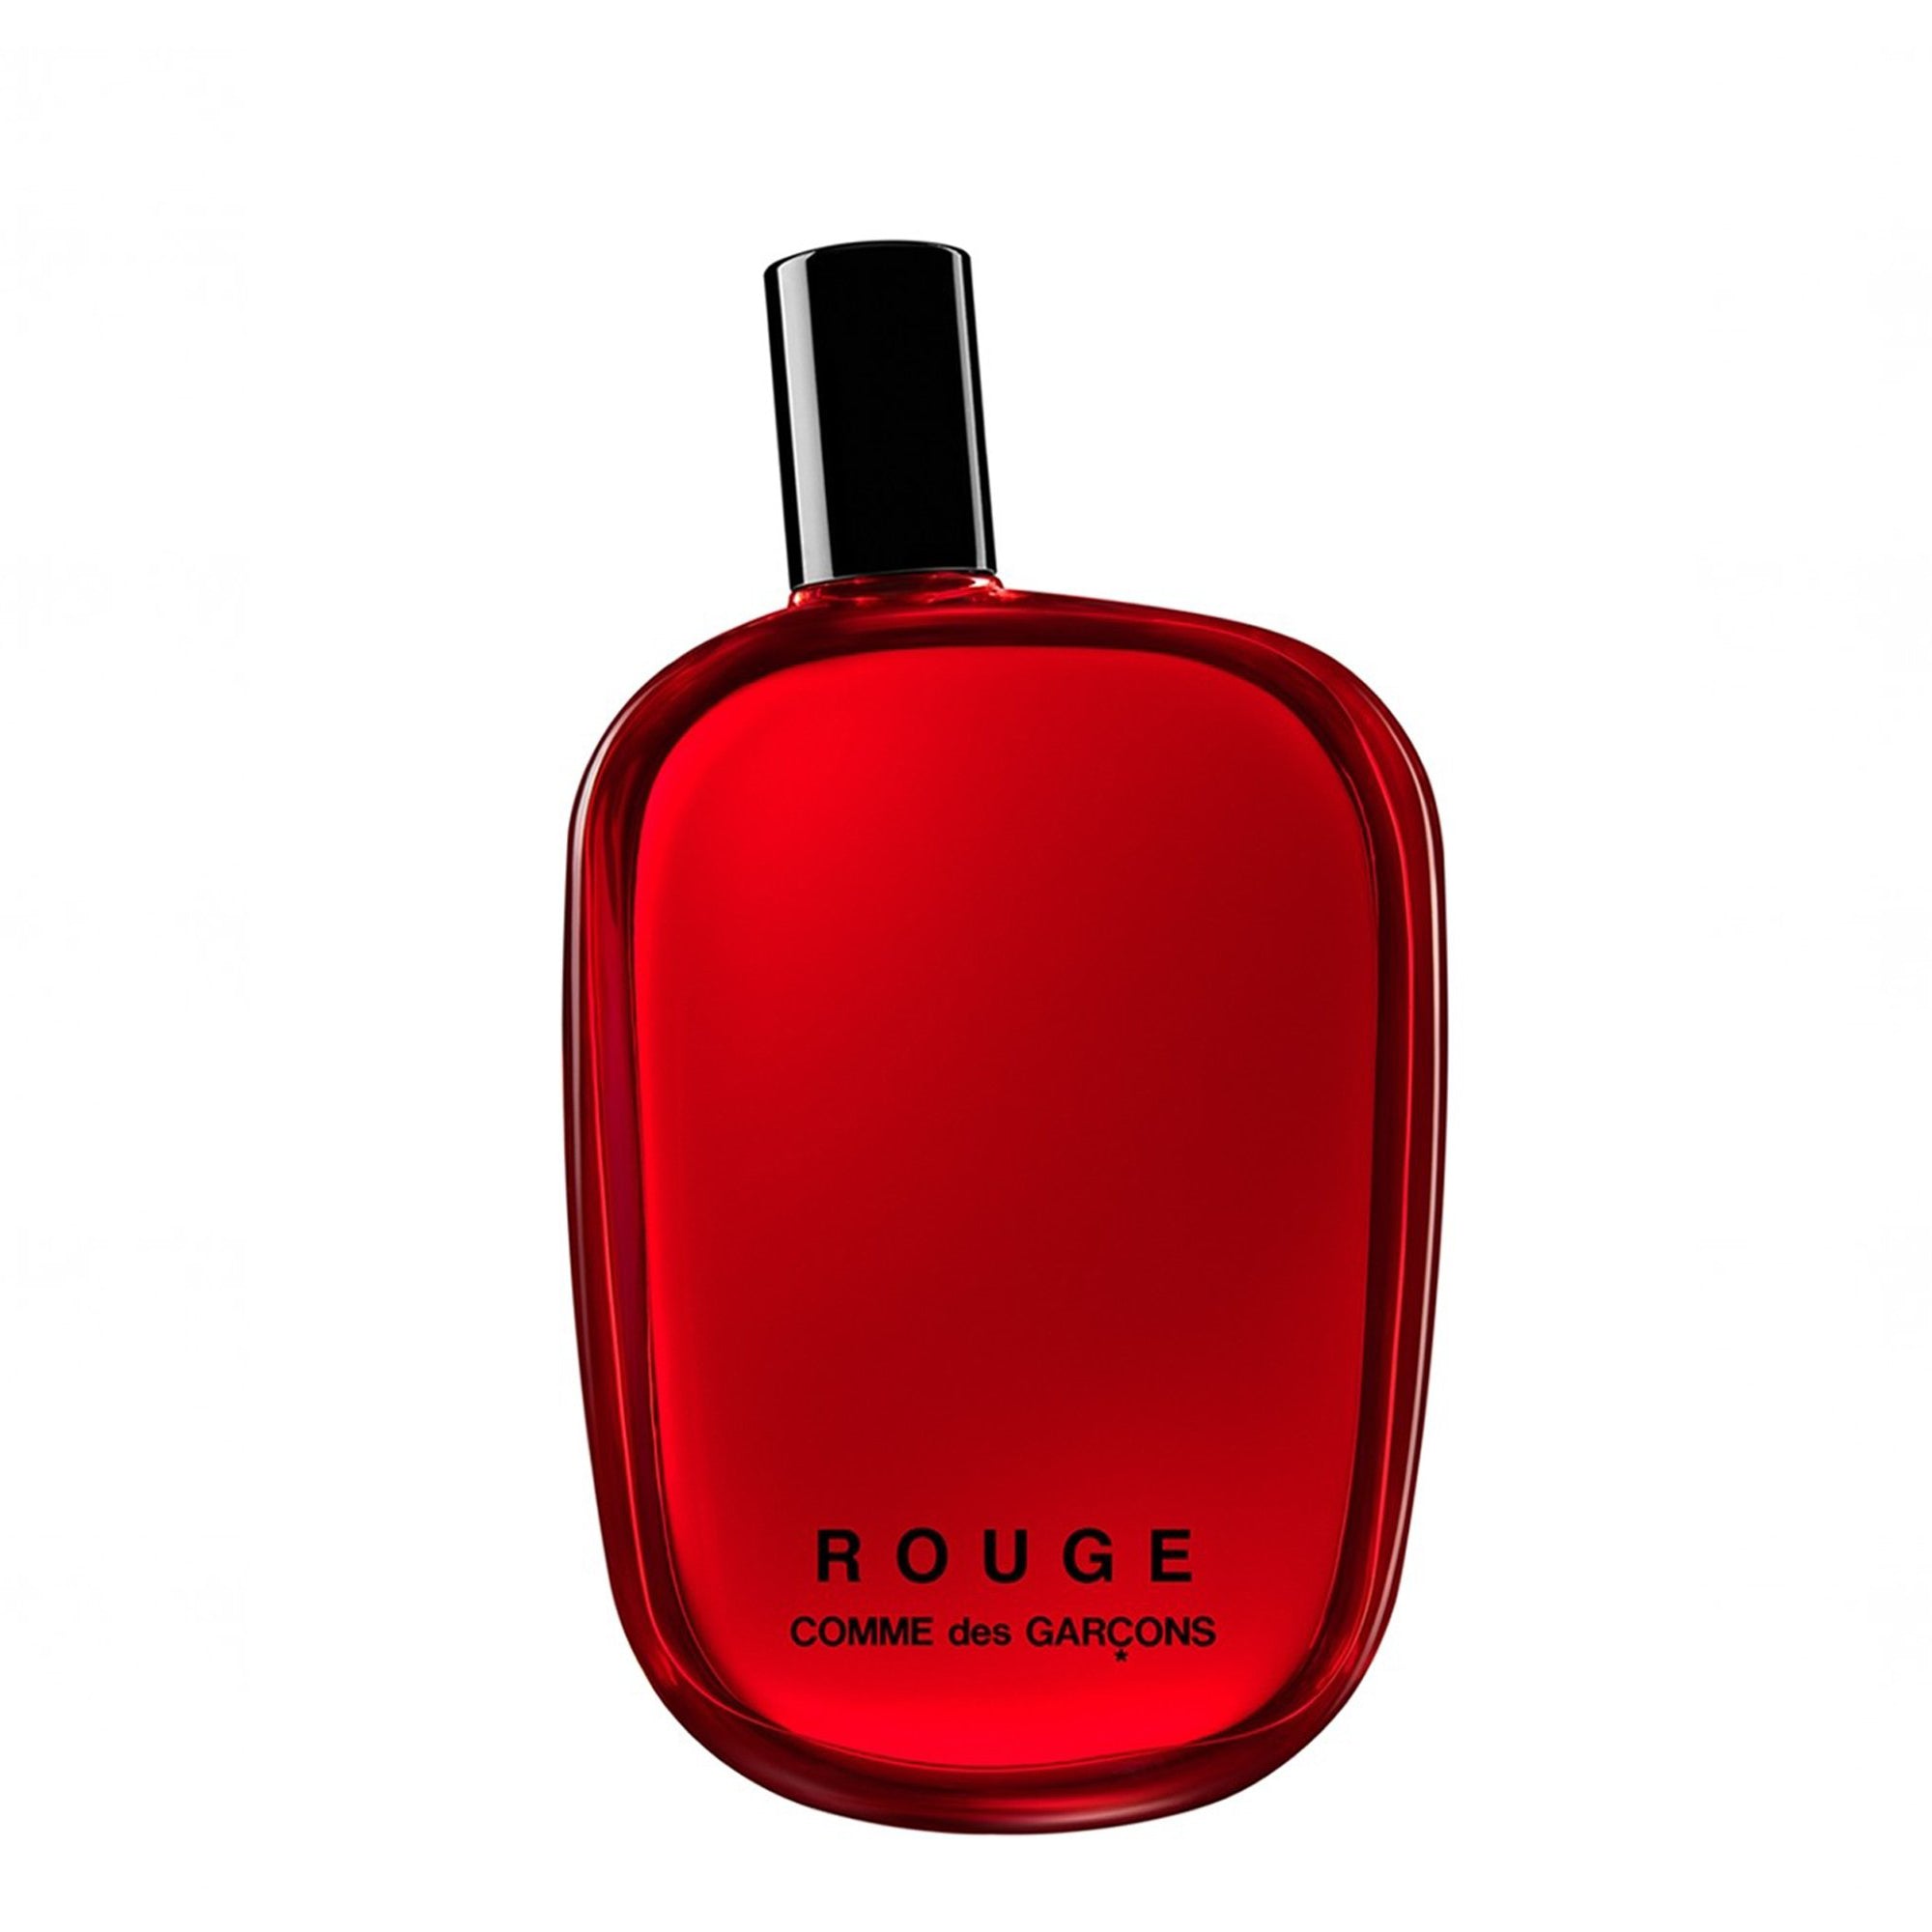 CDG PARFUM - Rouge Eau De Parfum - (100ml) view 1